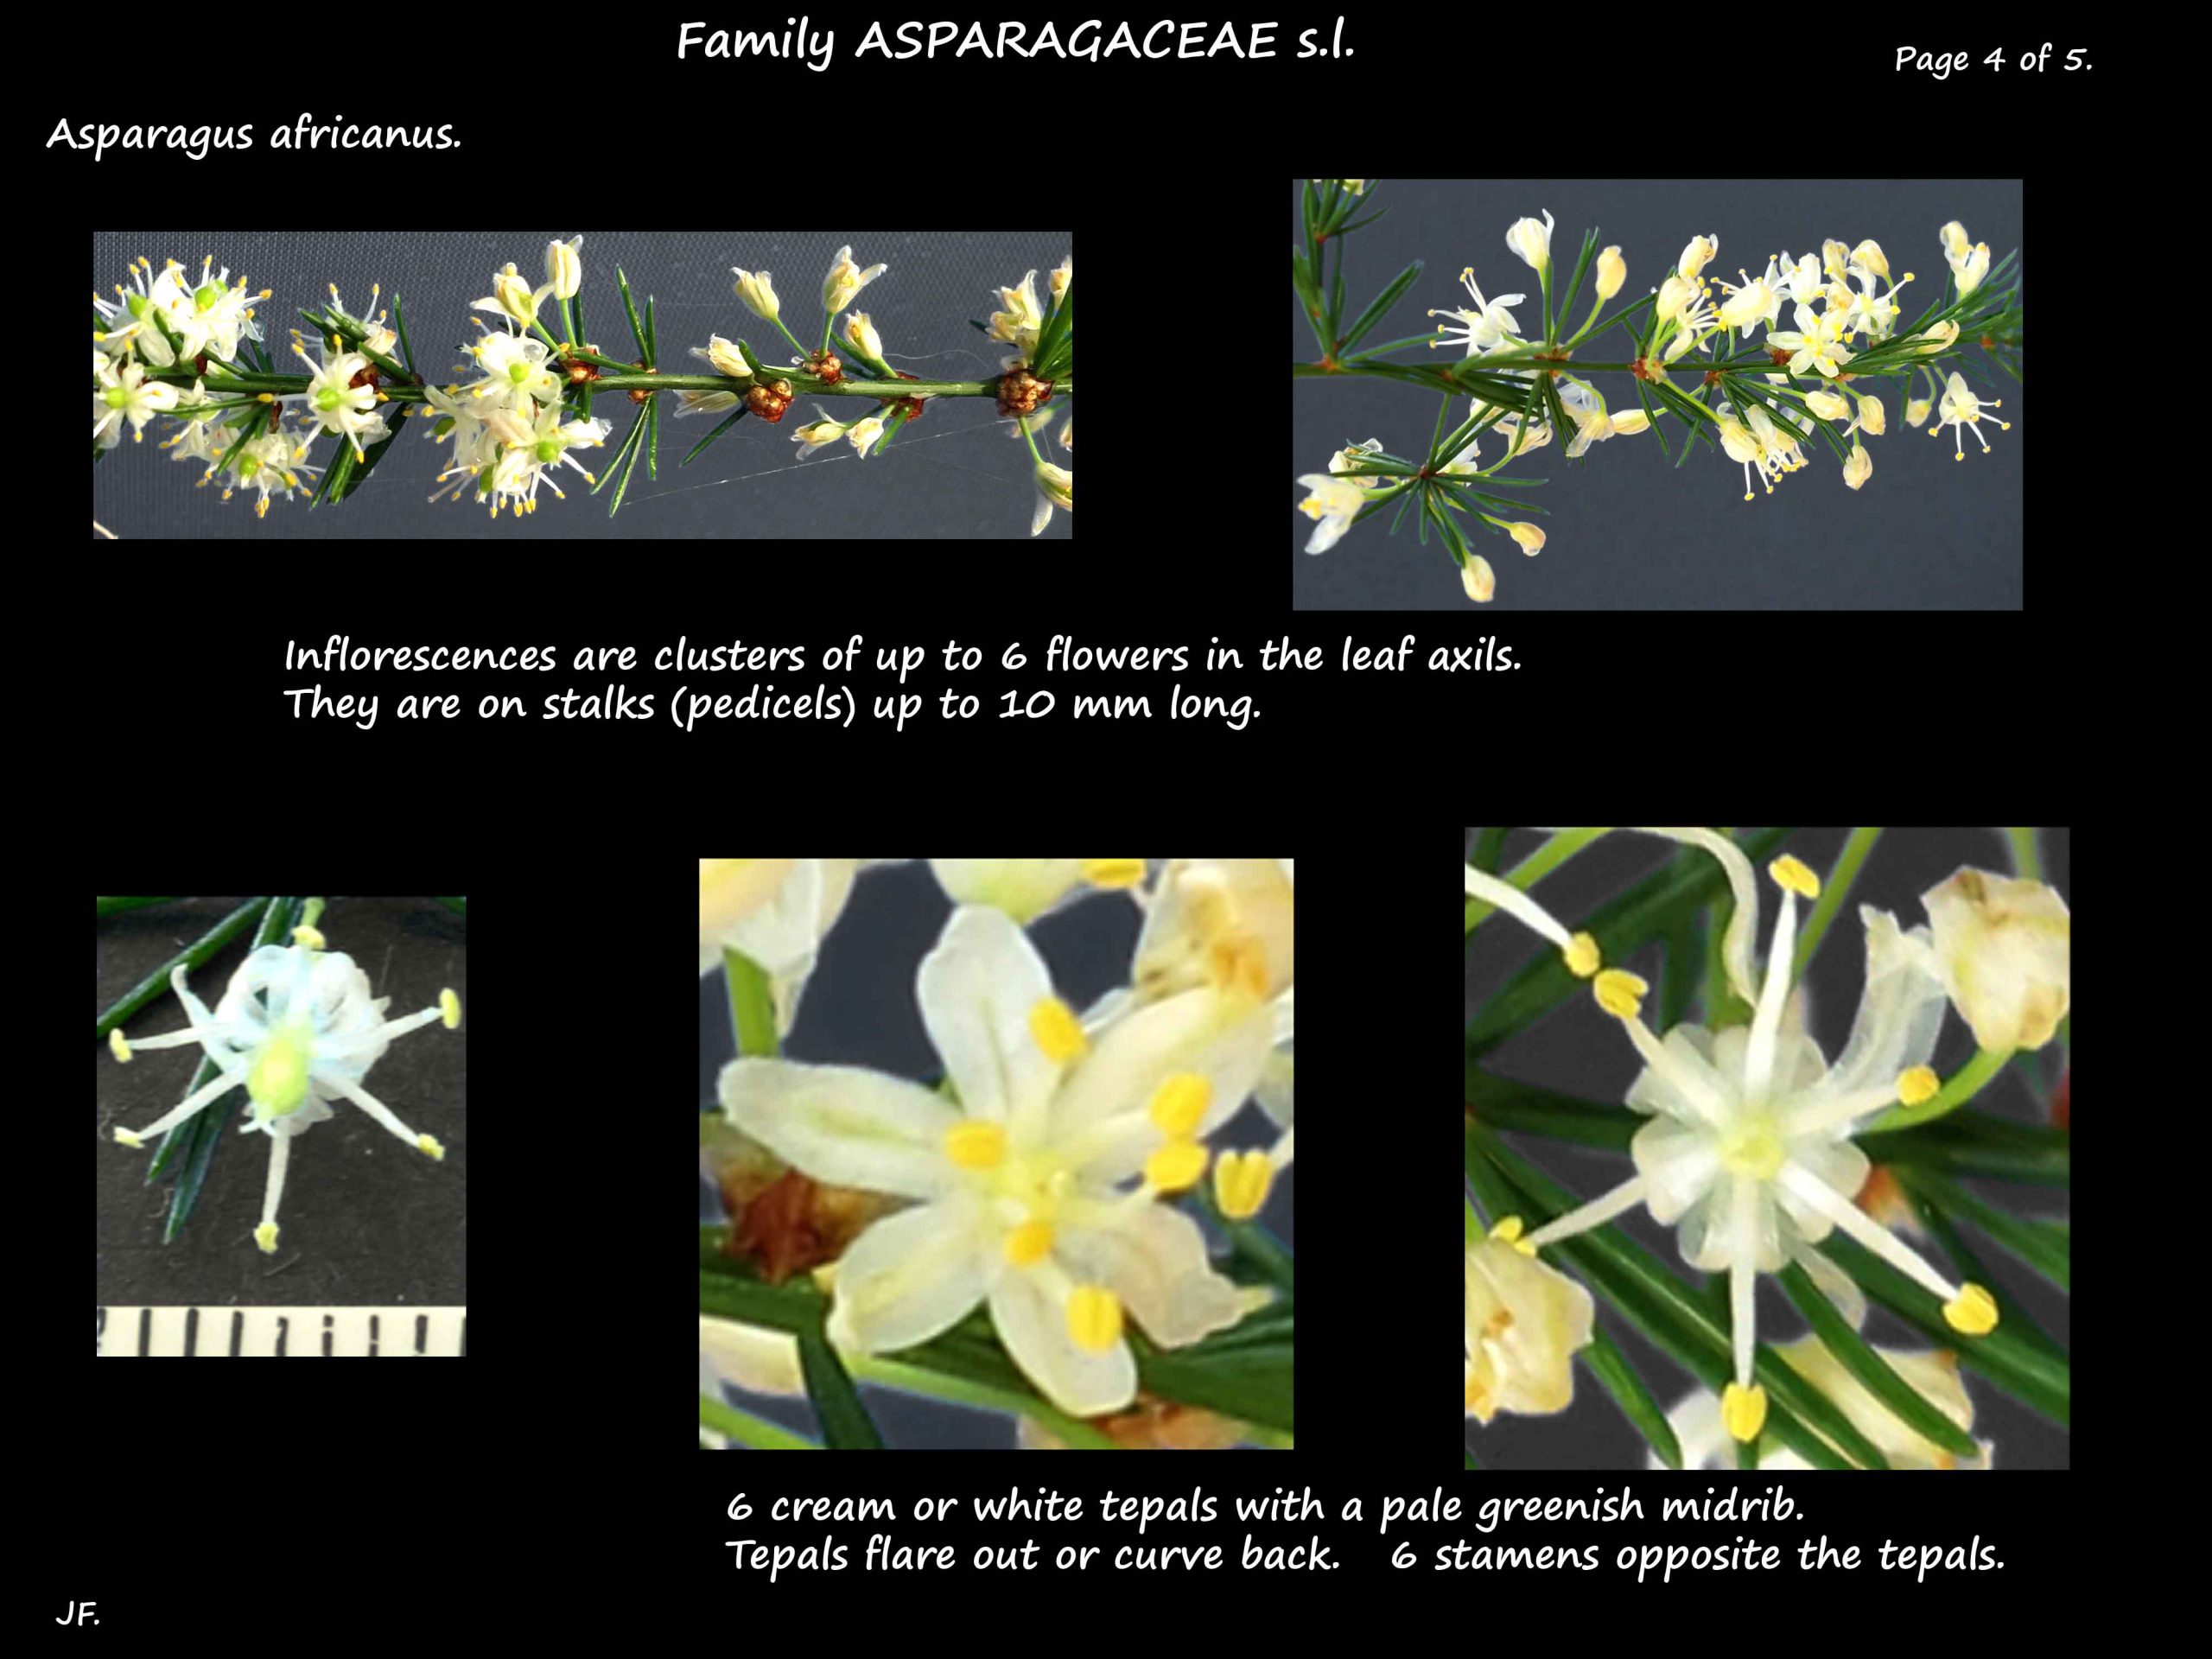 4 Asparagus africanus flowers